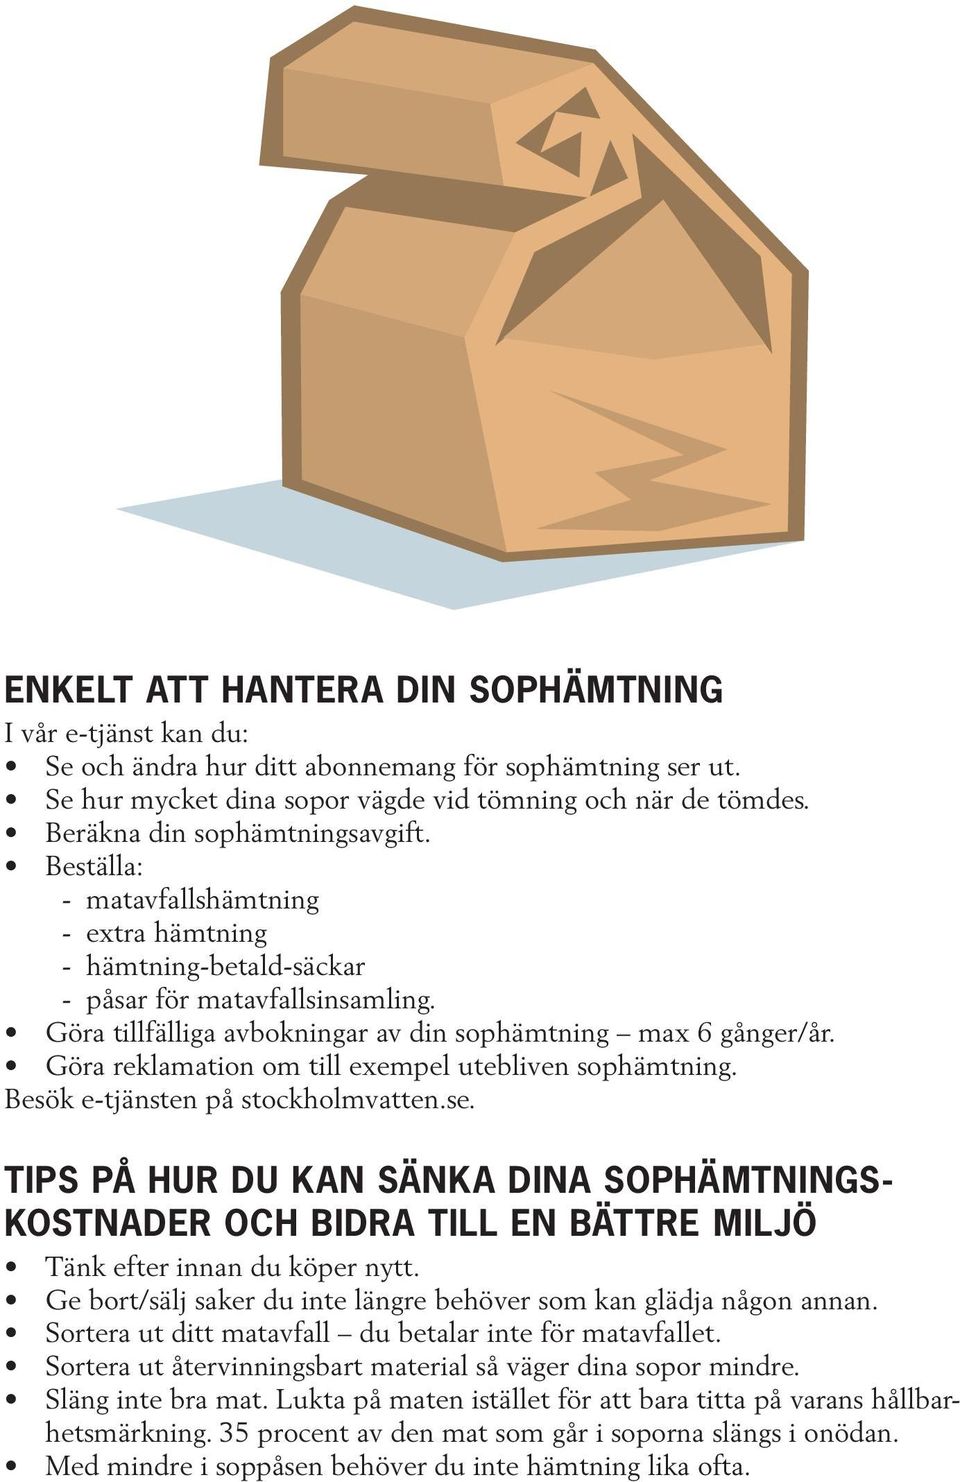 Göra reklamation om till exempel utebliven sophämtning. Besök e-tjänsten på stockholmvatten.se.